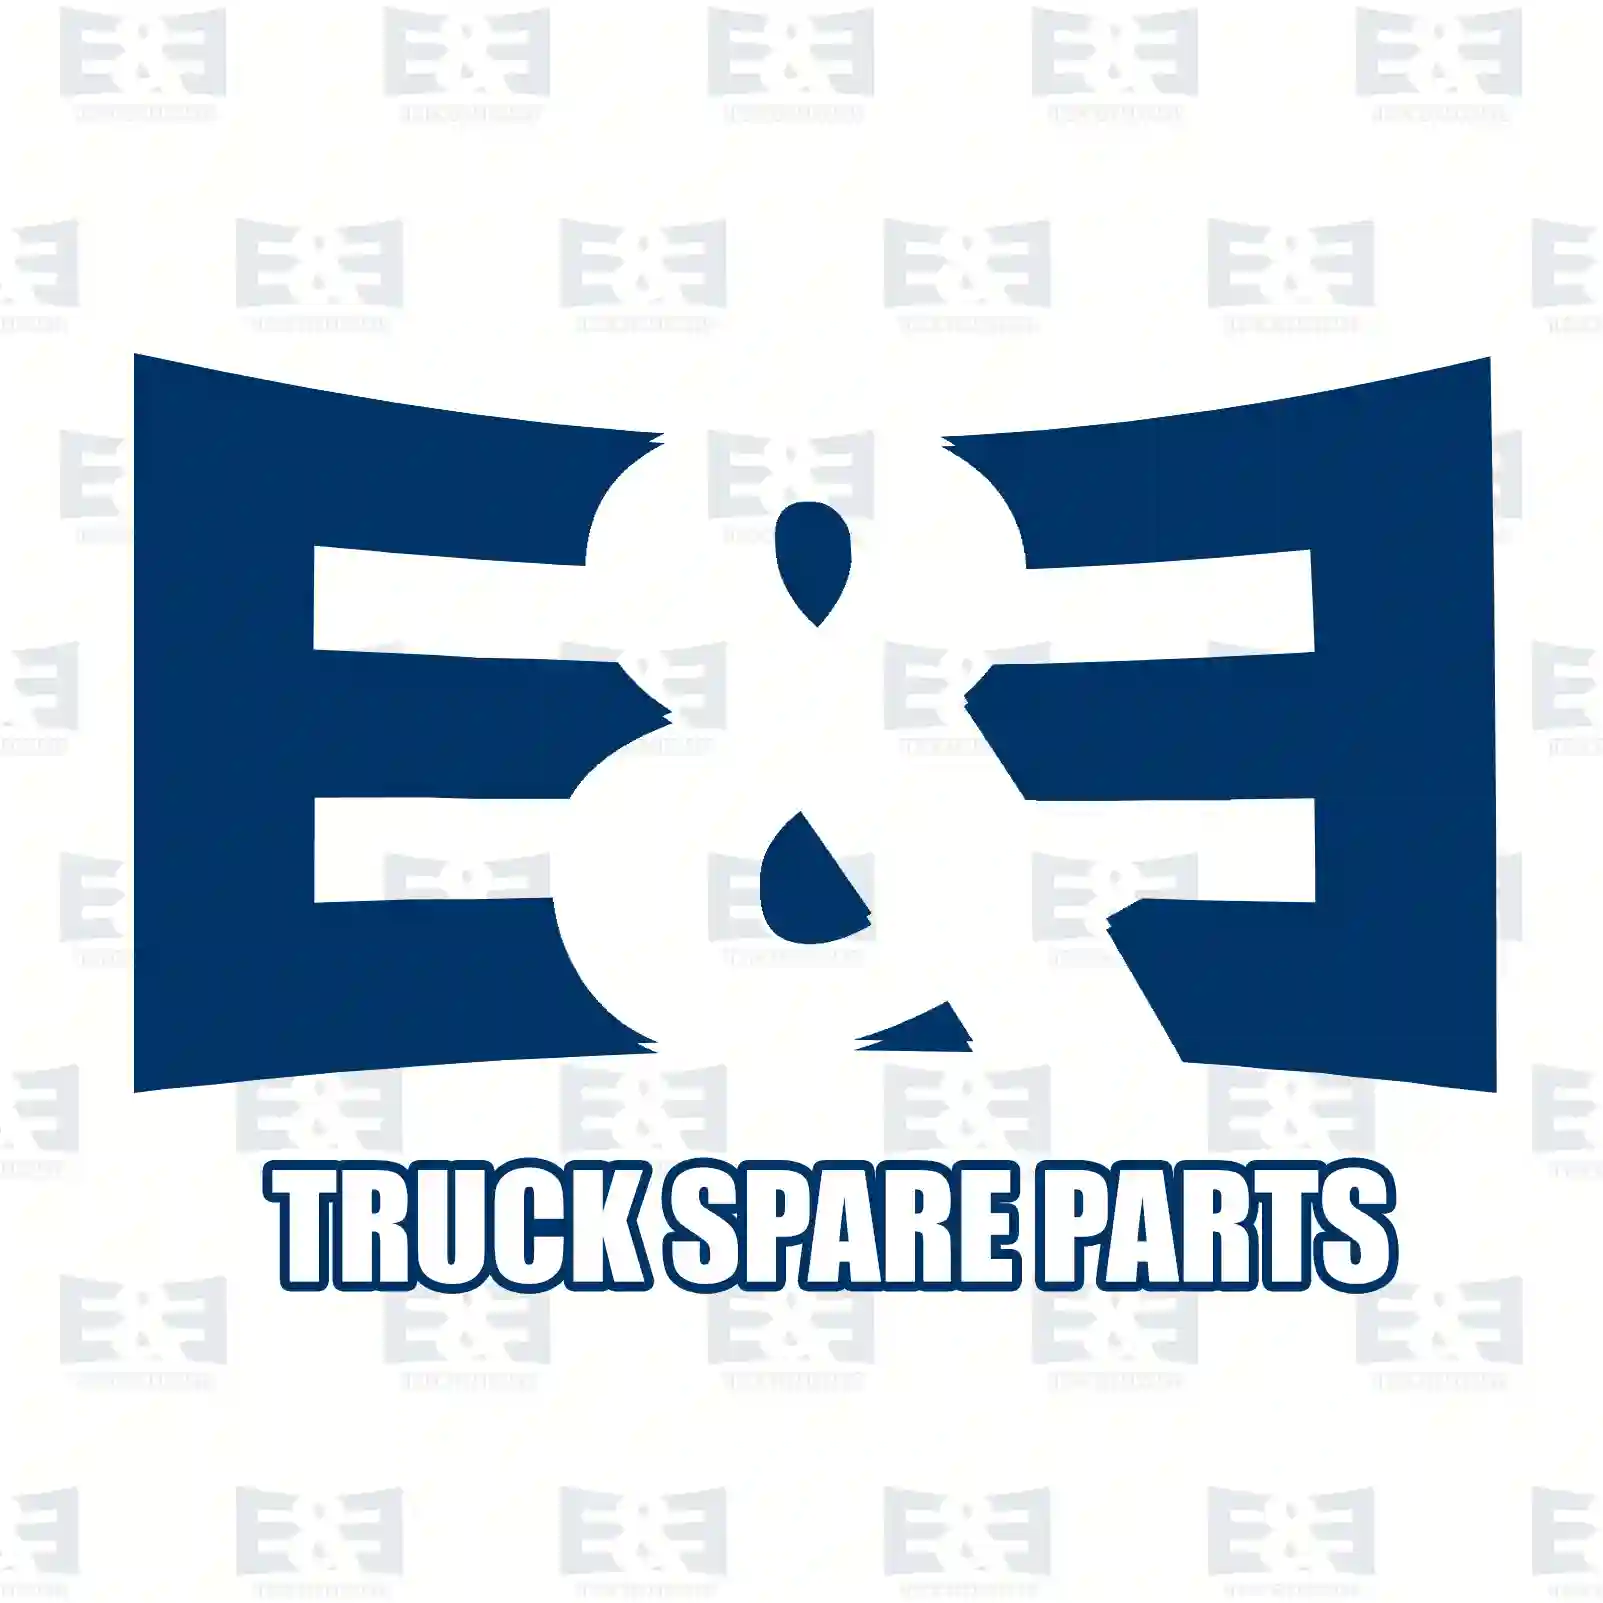 Air dryer, 2E2296008, 0024311015, 0024312115, ||  2E2296008 E&E Truck Spare Parts | Truck Spare Parts, Auotomotive Spare Parts Air dryer, 2E2296008, 0024311015, 0024312115, ||  2E2296008 E&E Truck Spare Parts | Truck Spare Parts, Auotomotive Spare Parts